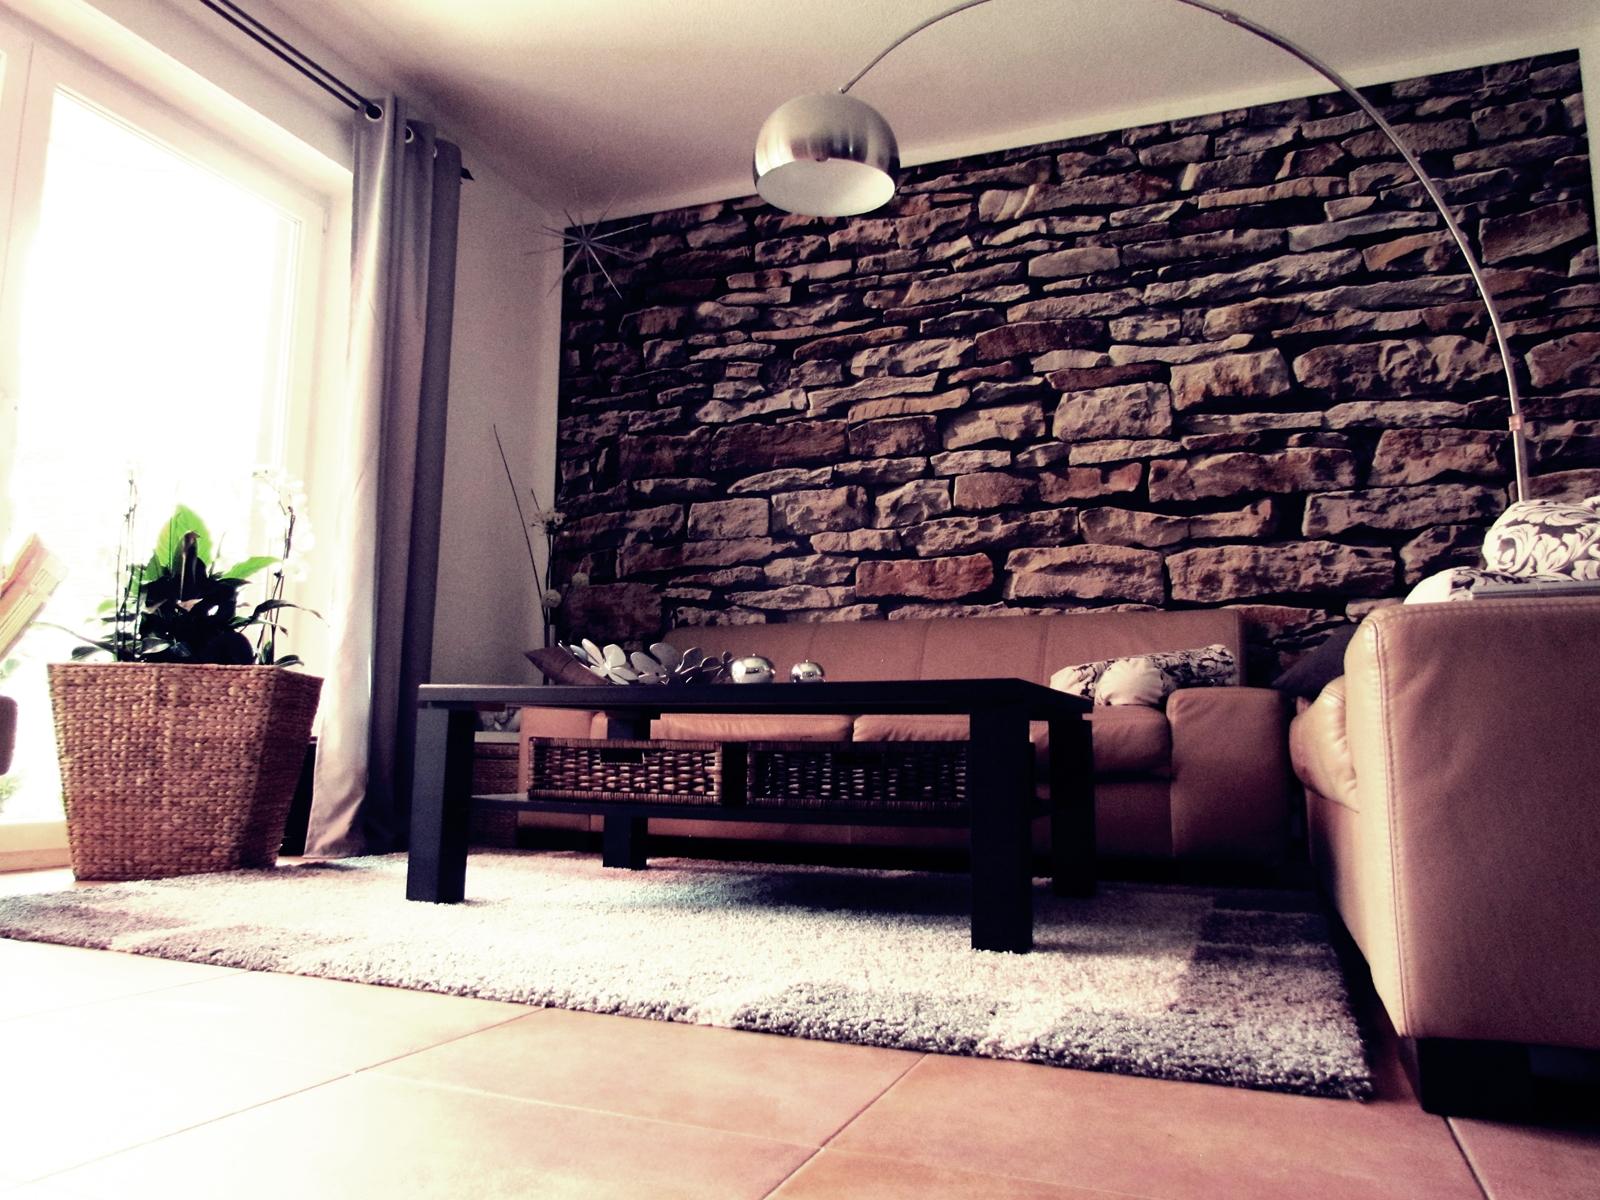 Fototapete im Livingroom #couchtisch #bogenlampe #wohnzimmer #fototapete #wanddeko #lampe #tisch ©roomrevolution